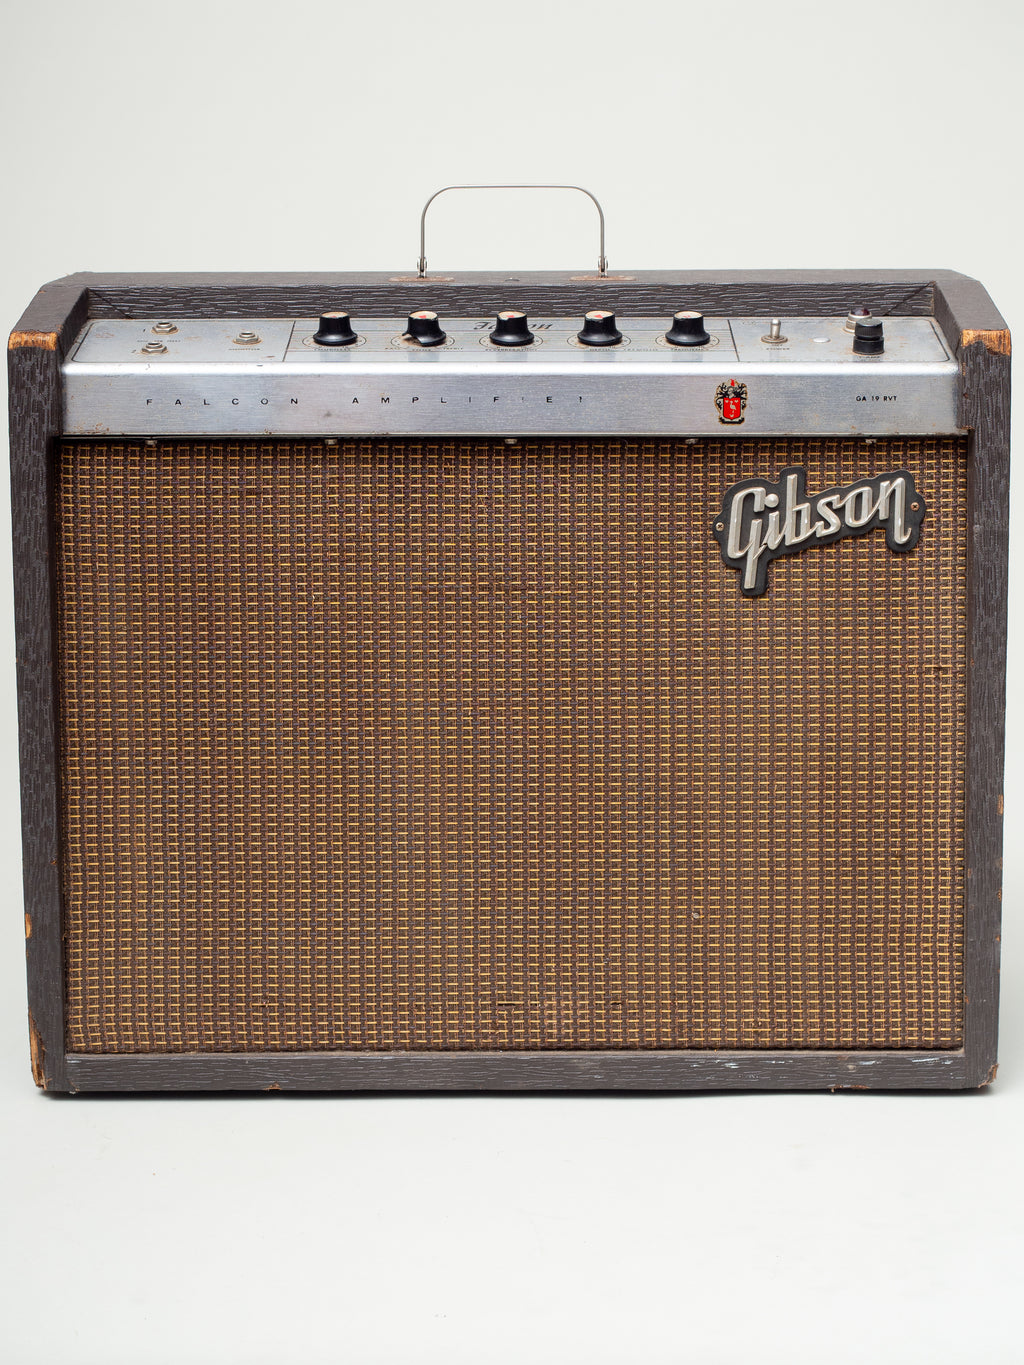 1964 Gibson Falcon